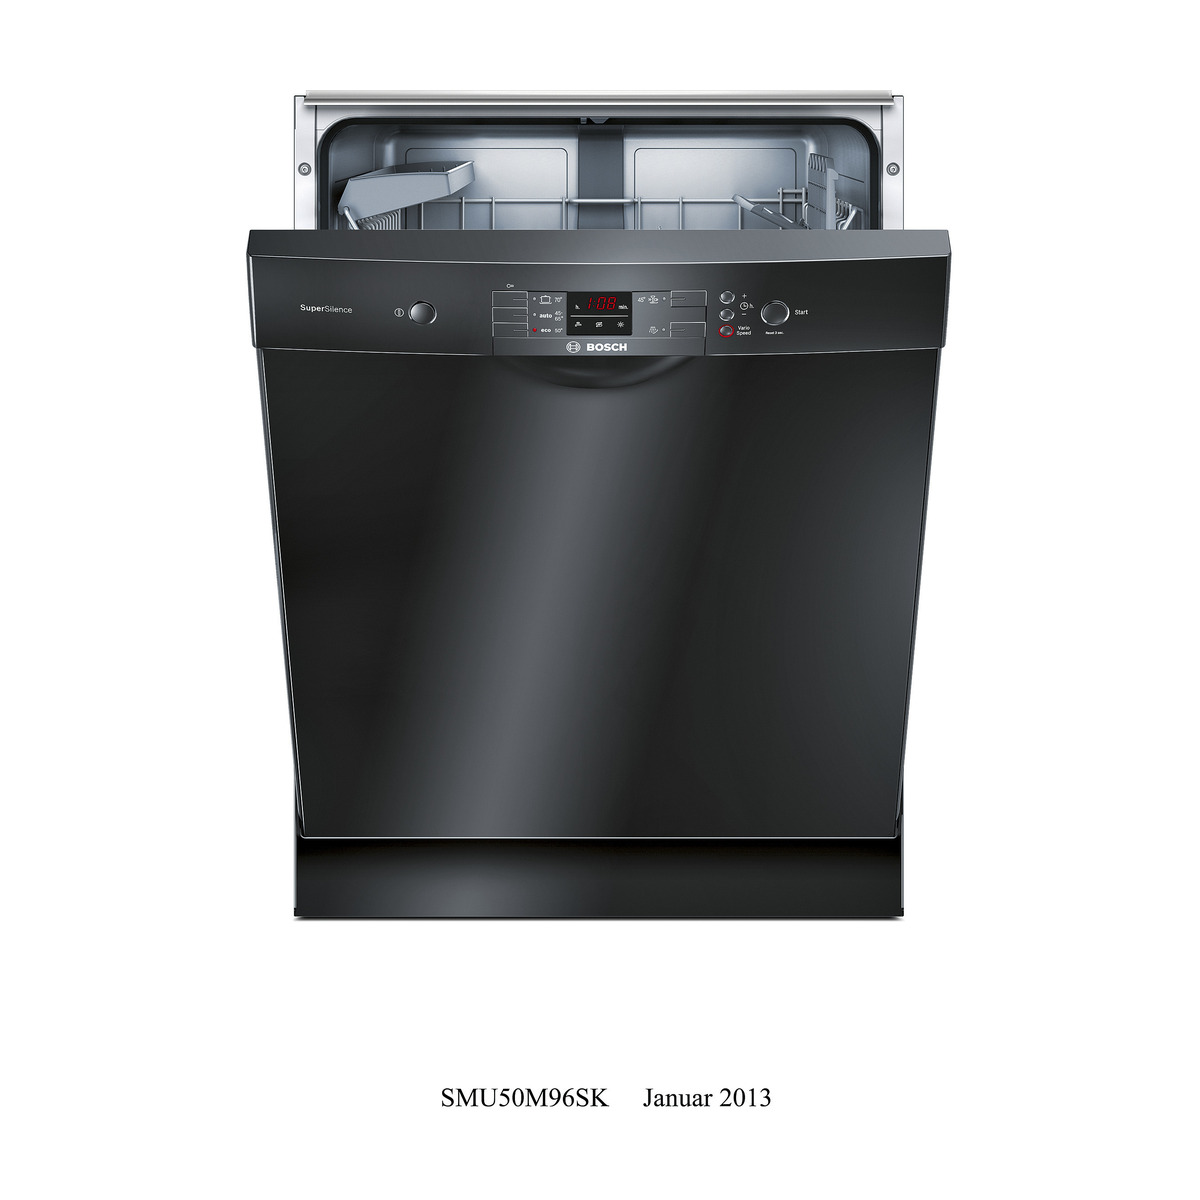 Посудомойка бош отдельностоящая. Посудомоечная машина Bosch 45 отдельностоящая. Бош посудомоечная машина 45 отдельностоящая. Посудомоечная машина Bertazzoni dw60bit. Посудомоечная машина бош 45 см отдельностоящая черная.